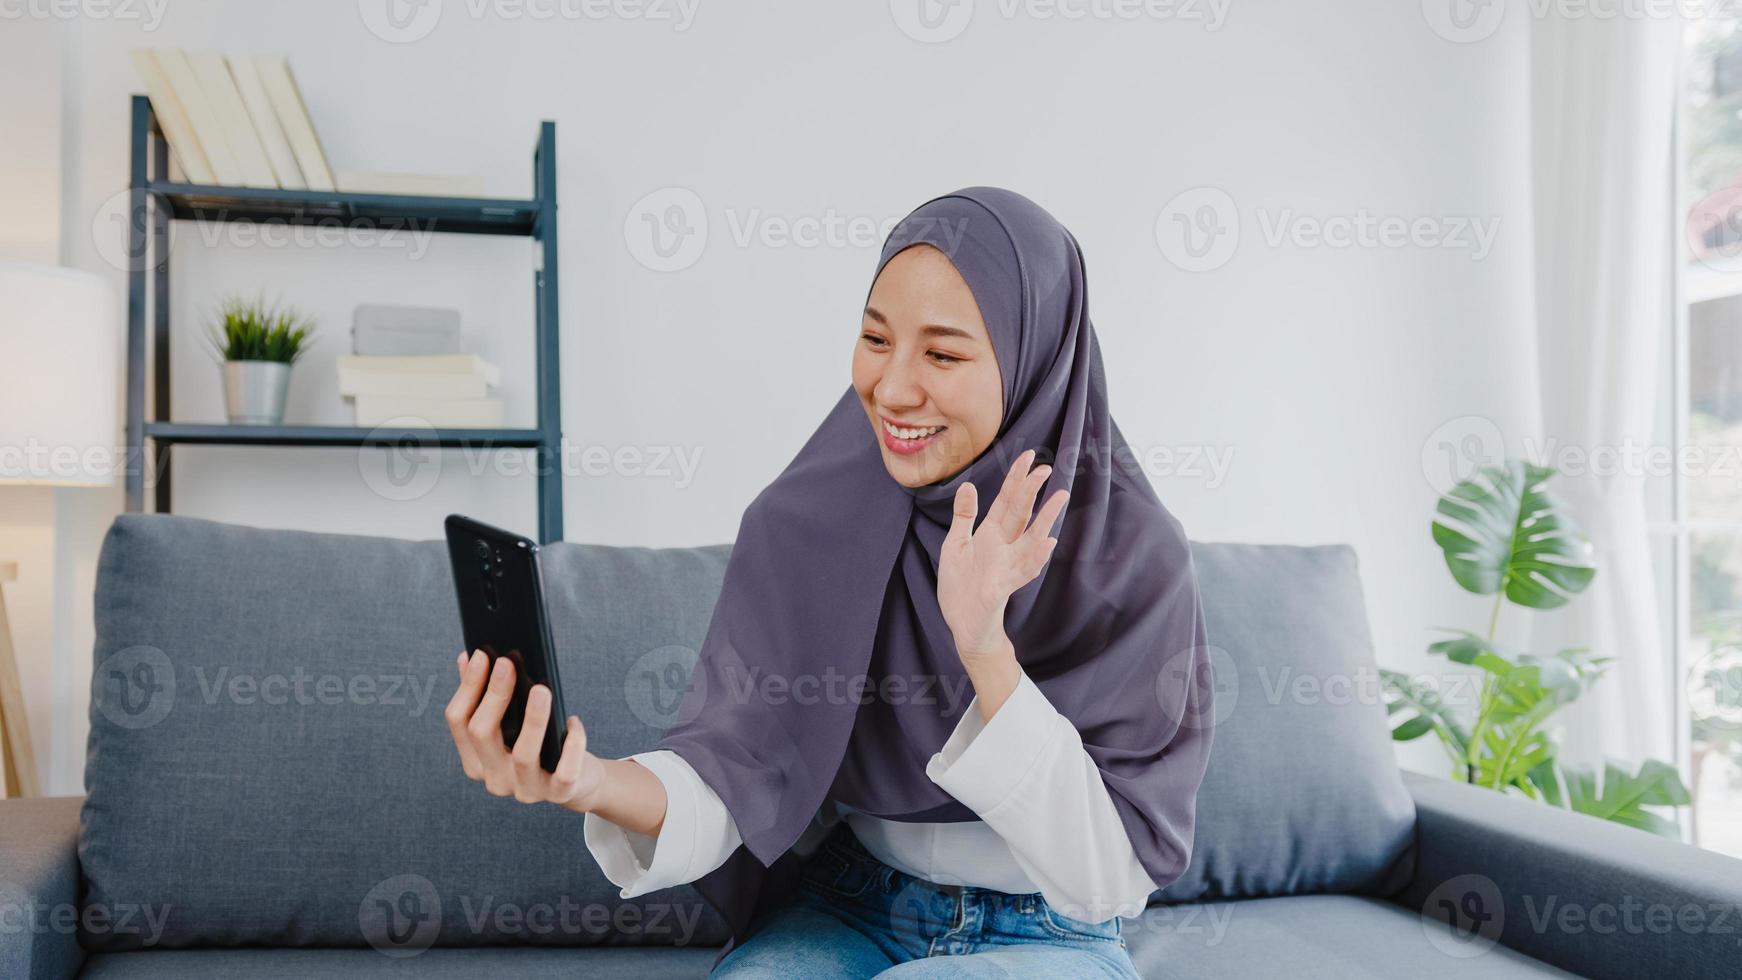 Asia dama musulmana usa hijab usando videollamada telefónica hablando con pareja en casa. joven adolescente haciendo video de vlog en las redes sociales en el sofá de la sala de estar. distanciamiento social, cuarentena por coronavirus. foto